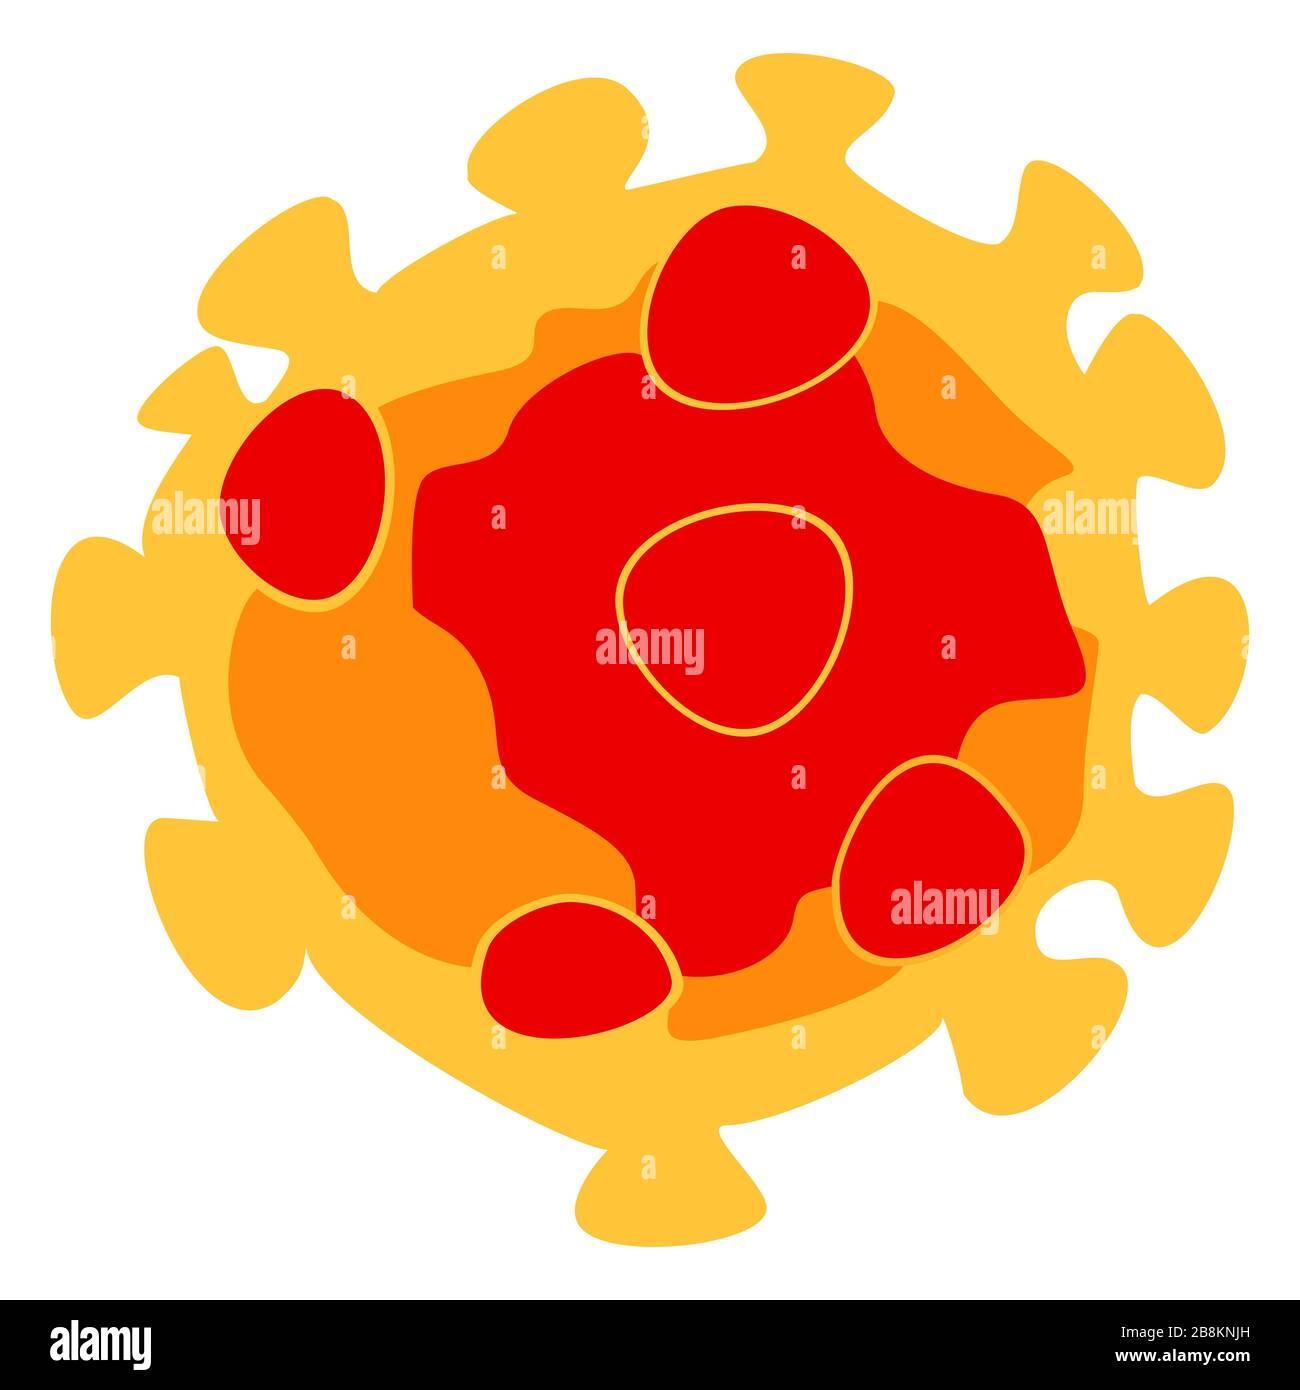 COVID-19, Novel coronavirus (2019-nCoV) - représentation simple d'une molécule virale comme vecteur. Illustration de Vecteur